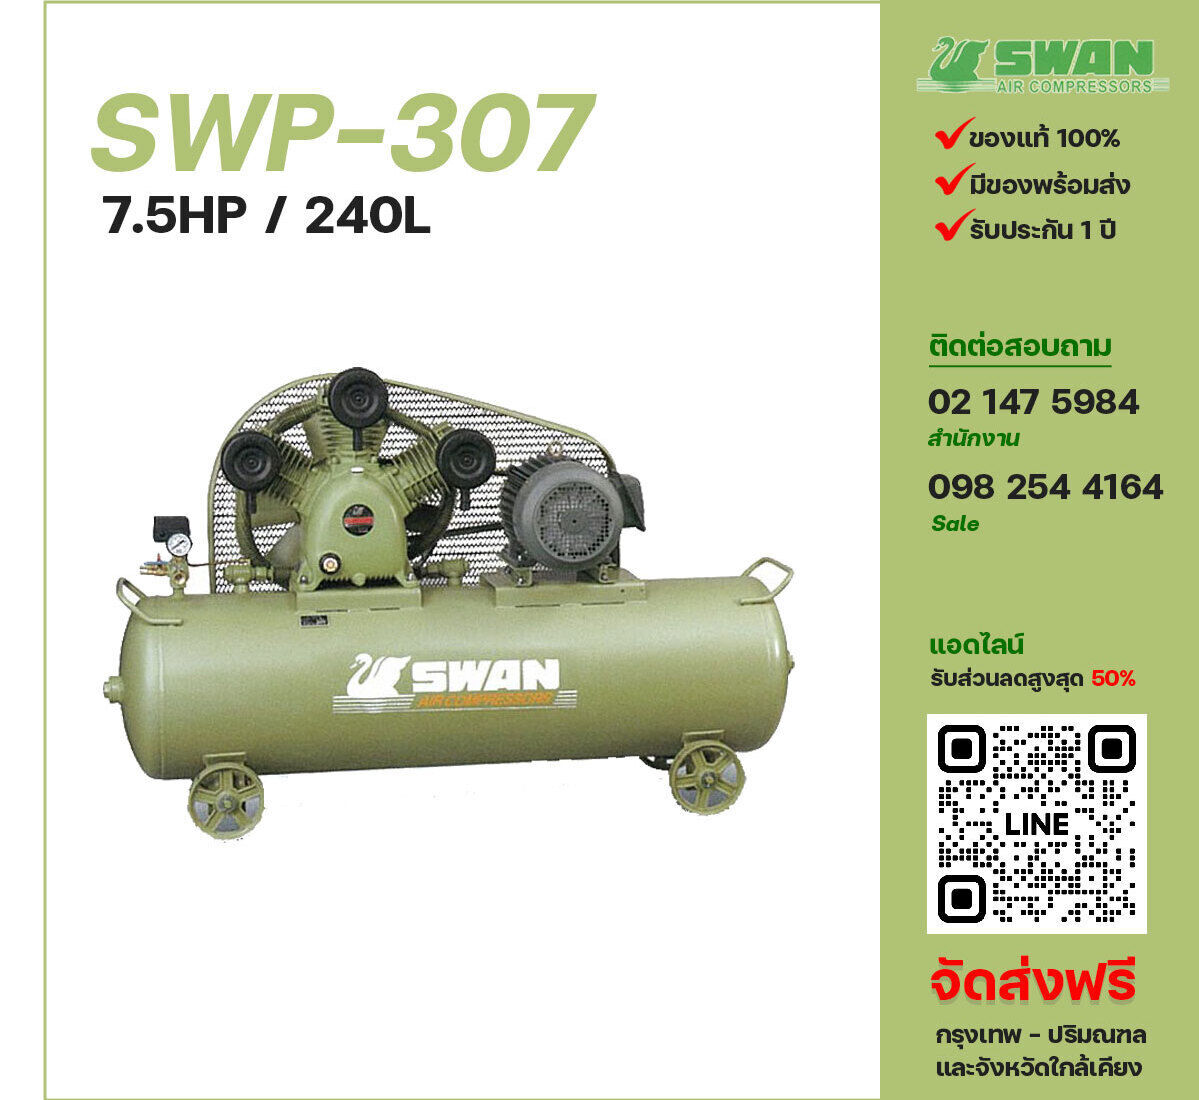 ปั๊มลมสวอน SWAN SWP-307 380V ปั๊มลมลูกสูบ ขนาด 3 สูบ 7.5 แรงม้า 240 ลิตร SWAN พร้อมมอเตอร์ ไฟ 380V ส่งฟรี กรุงเทพฯ-ปริมณฑล รับประกัน 1 ปี